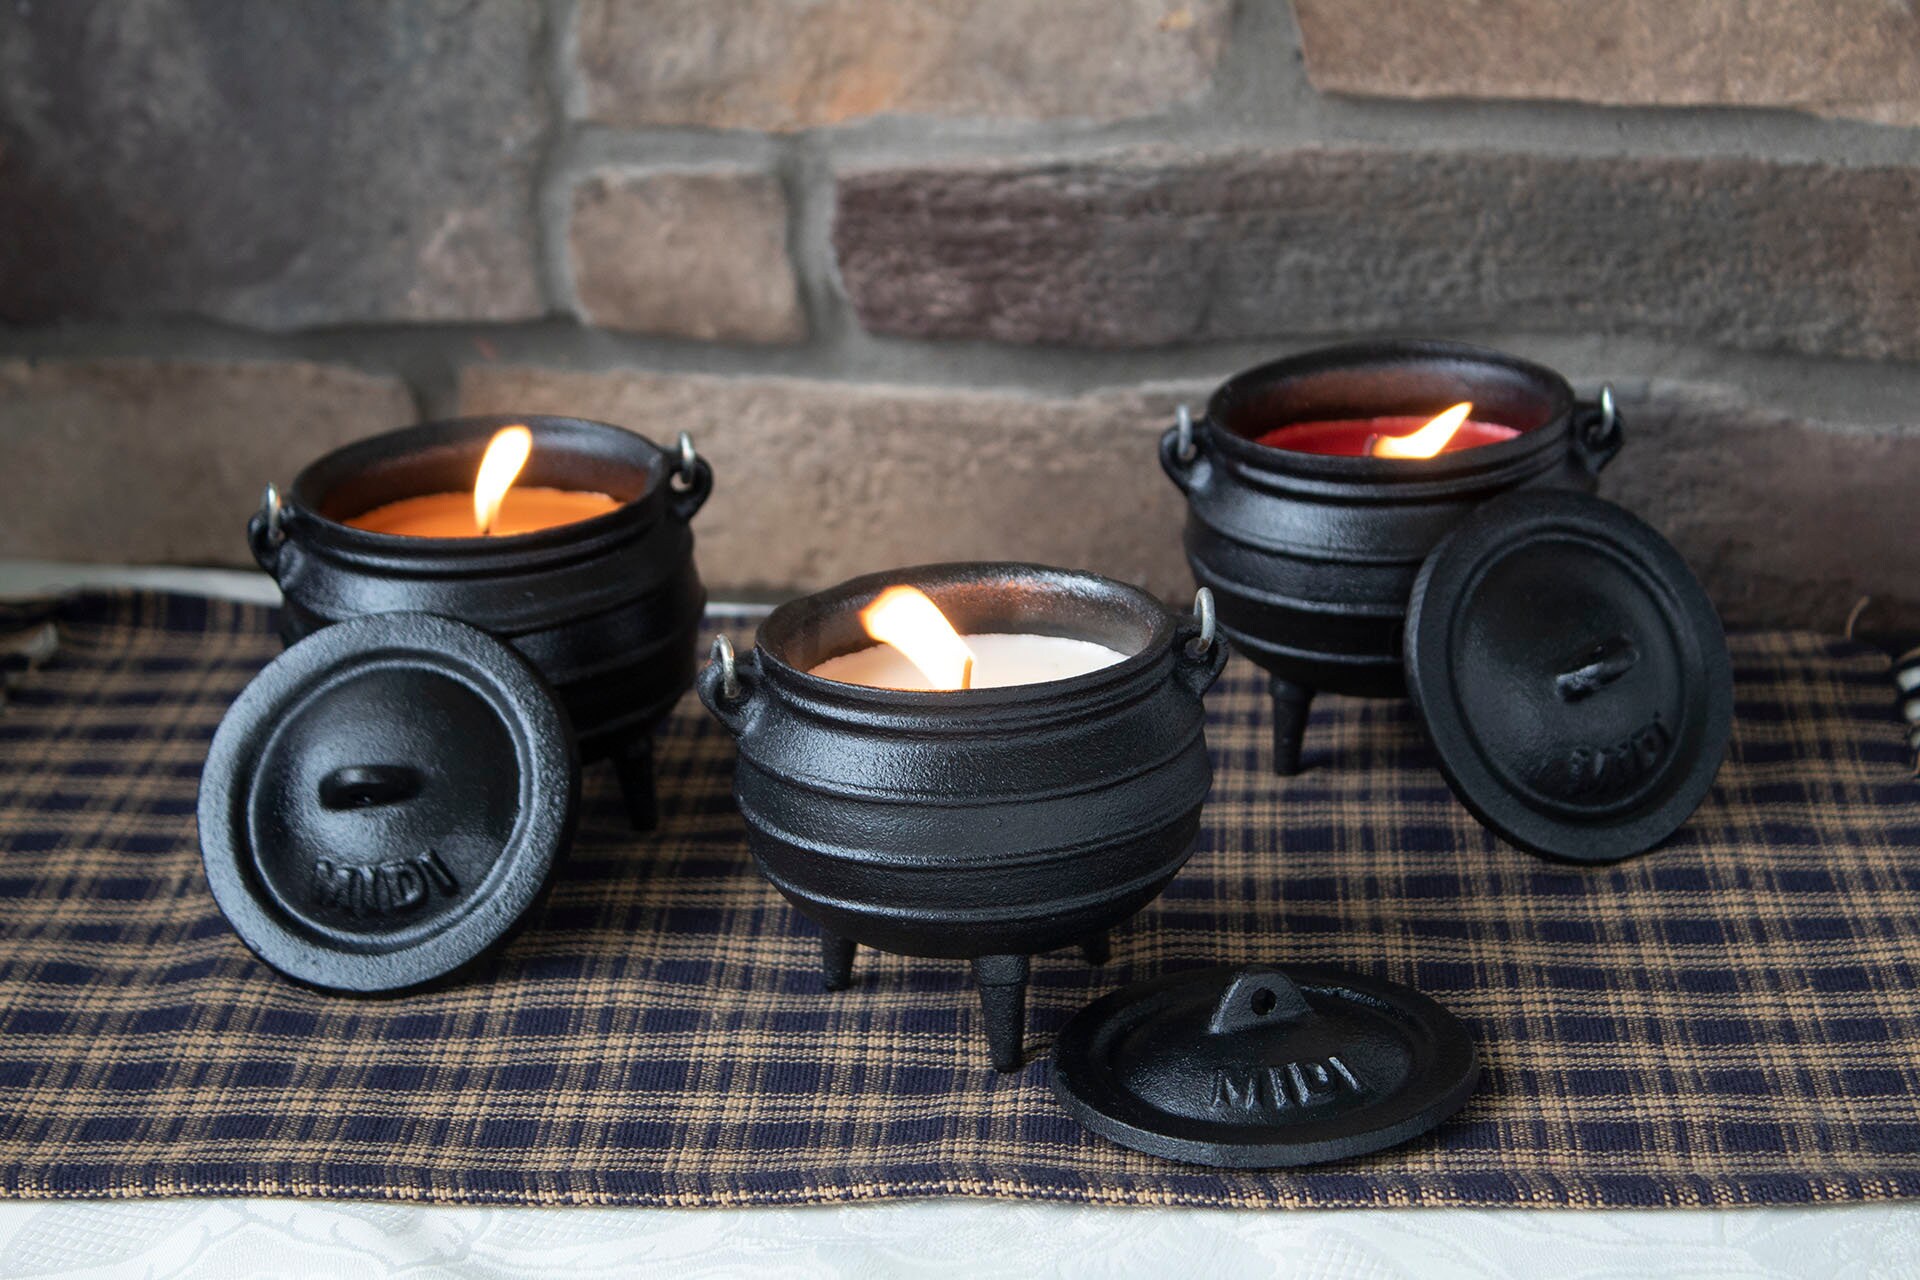 Cast Iron Cauldron Potjie Pot Size 1/2 Cast-iron Lodge Pots and